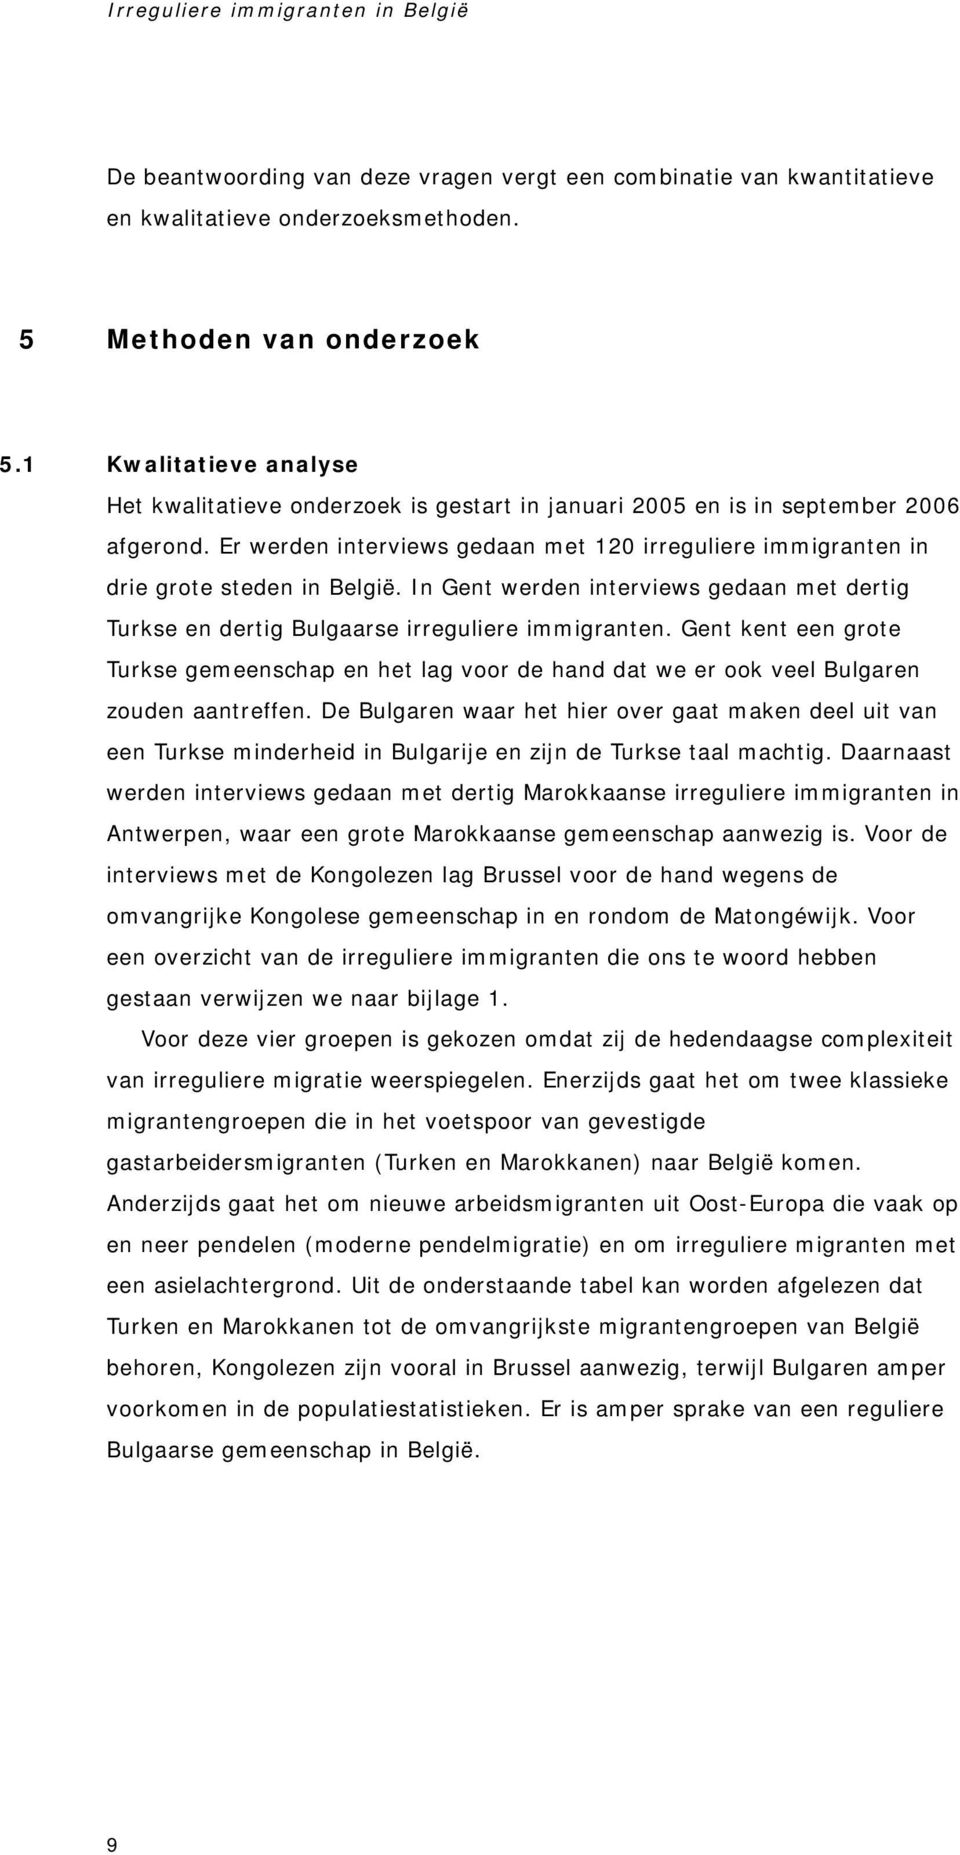 Er werden interviews gedaan met 120 irreguliere immigranten in drie grote steden in België. In Gent werden interviews gedaan met dertig Turkse en dertig Bulgaarse irreguliere immigranten.